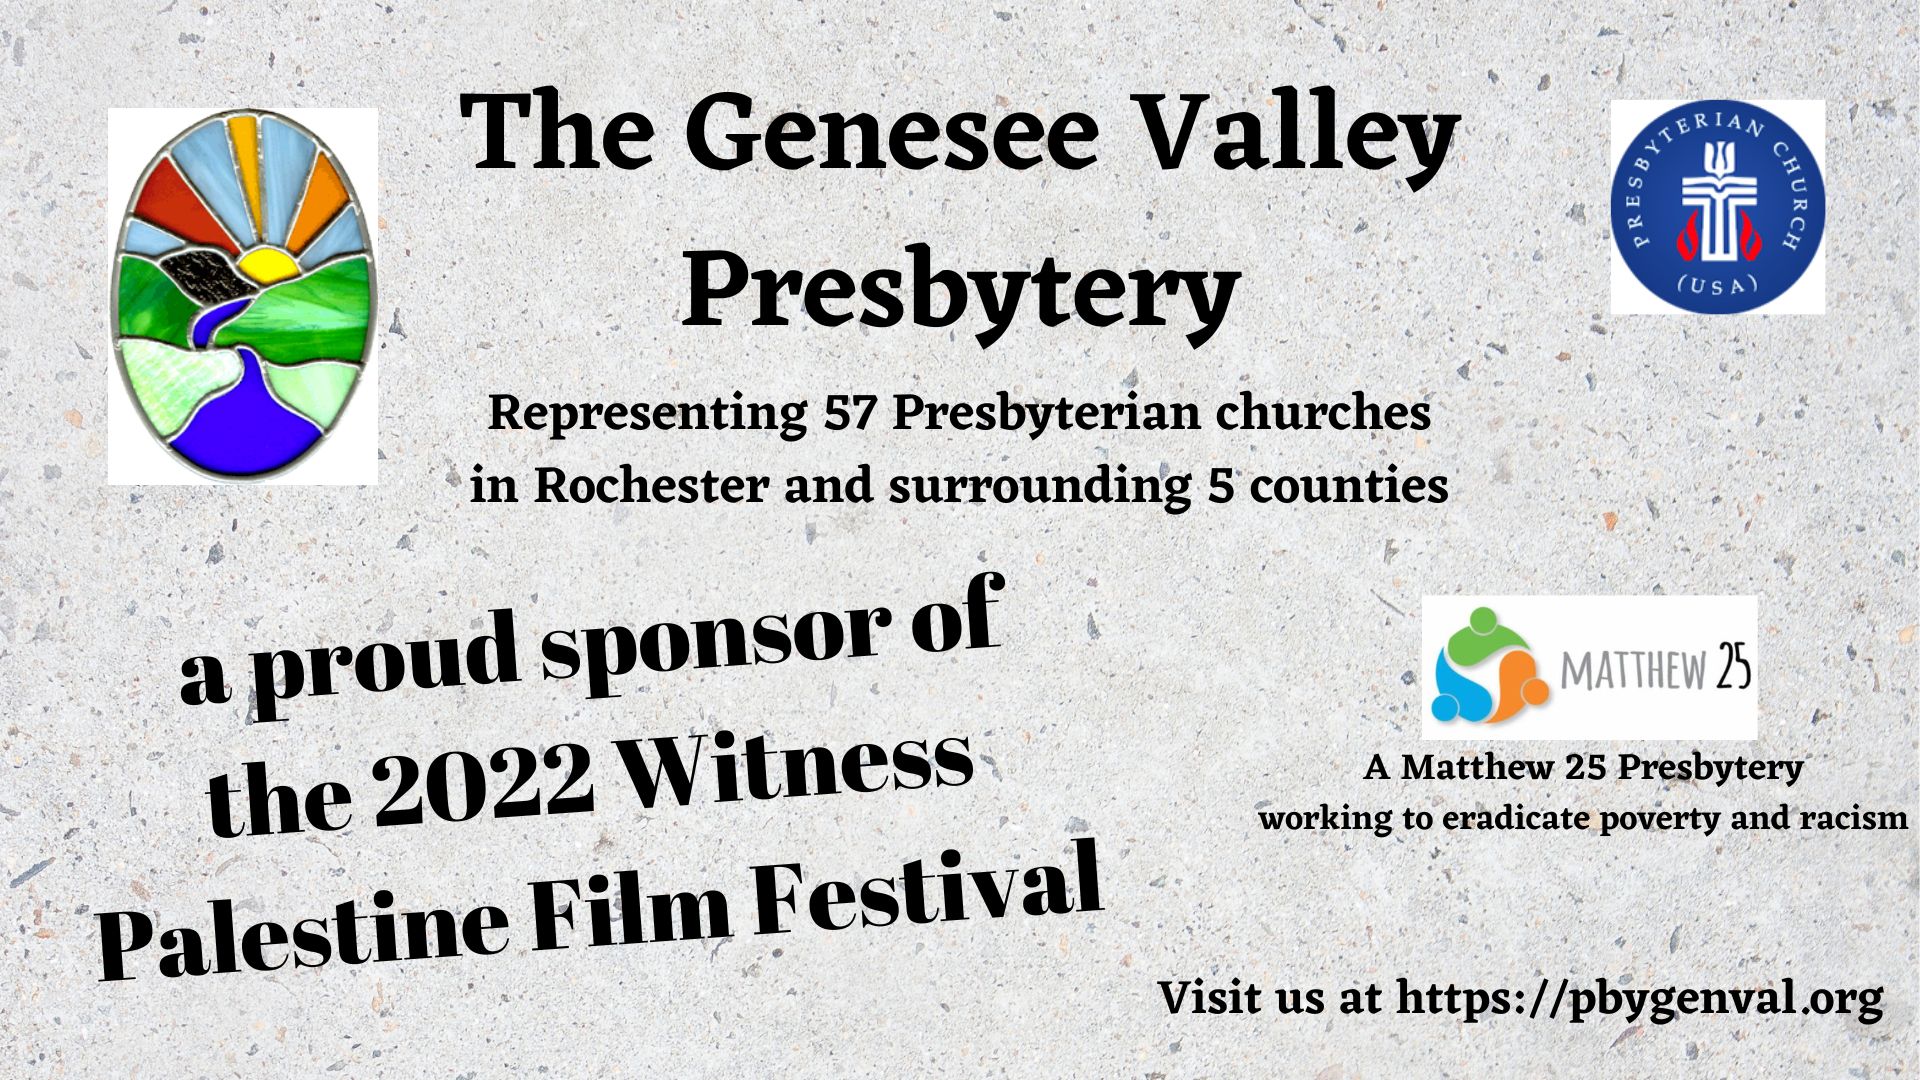 Presbytery film slide 2022